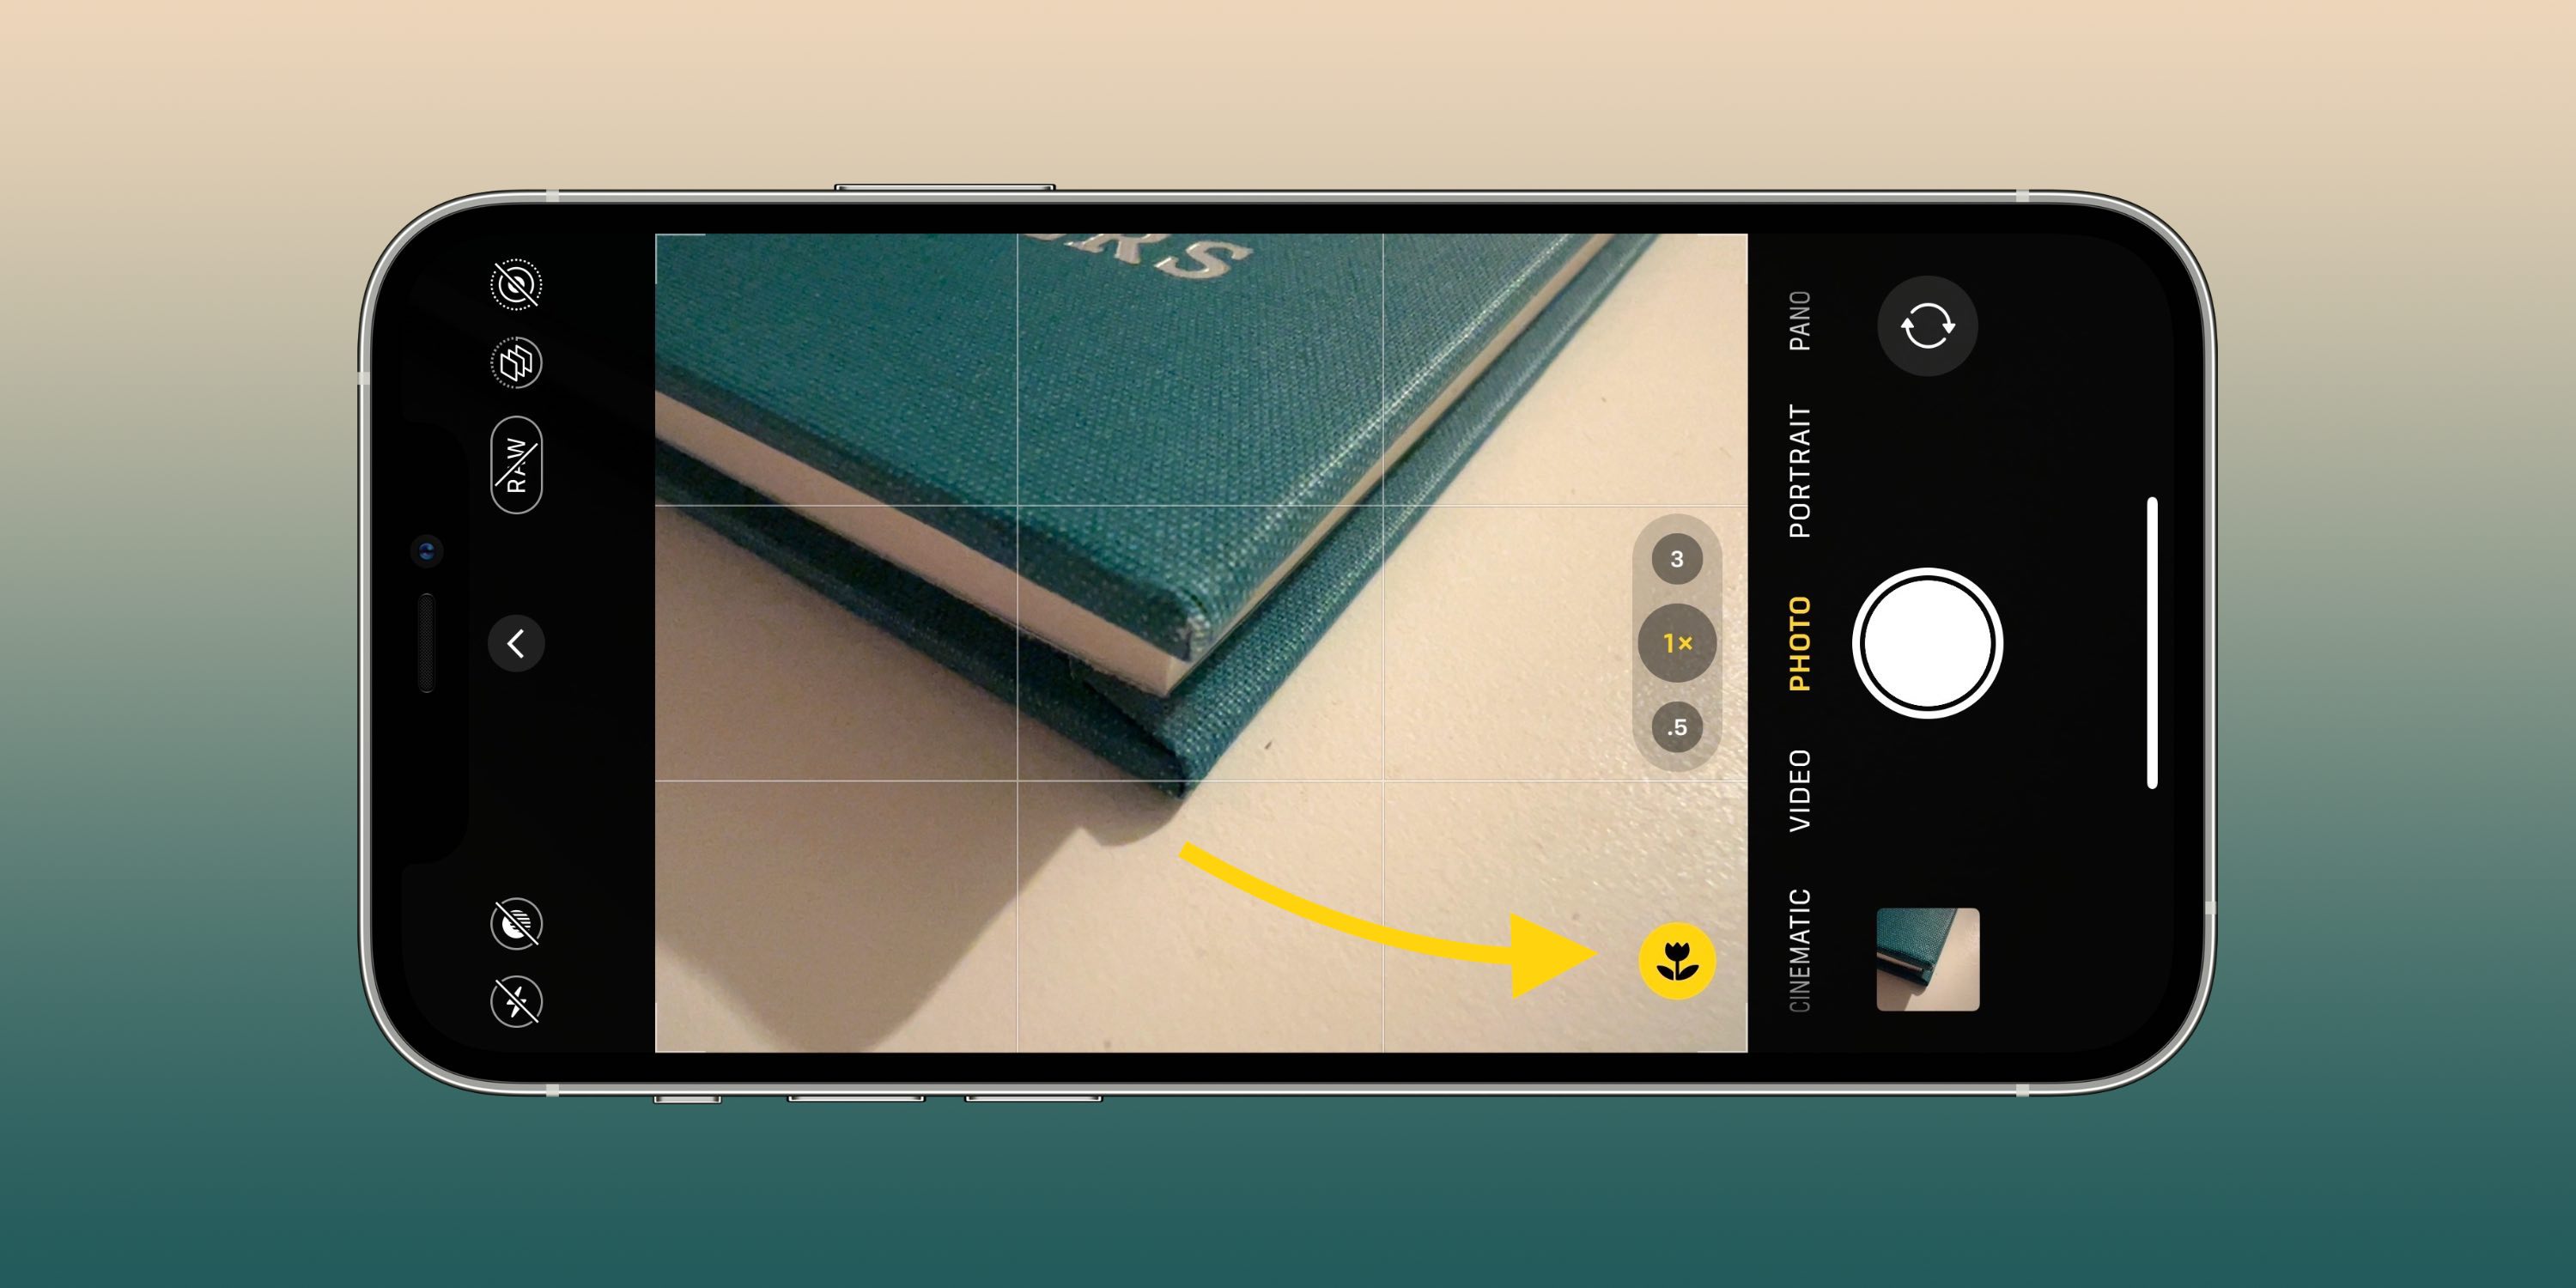 Essas configurações da câmera podem ajudá-lo a tirar fotos e vídeos melhores no seu iPhone